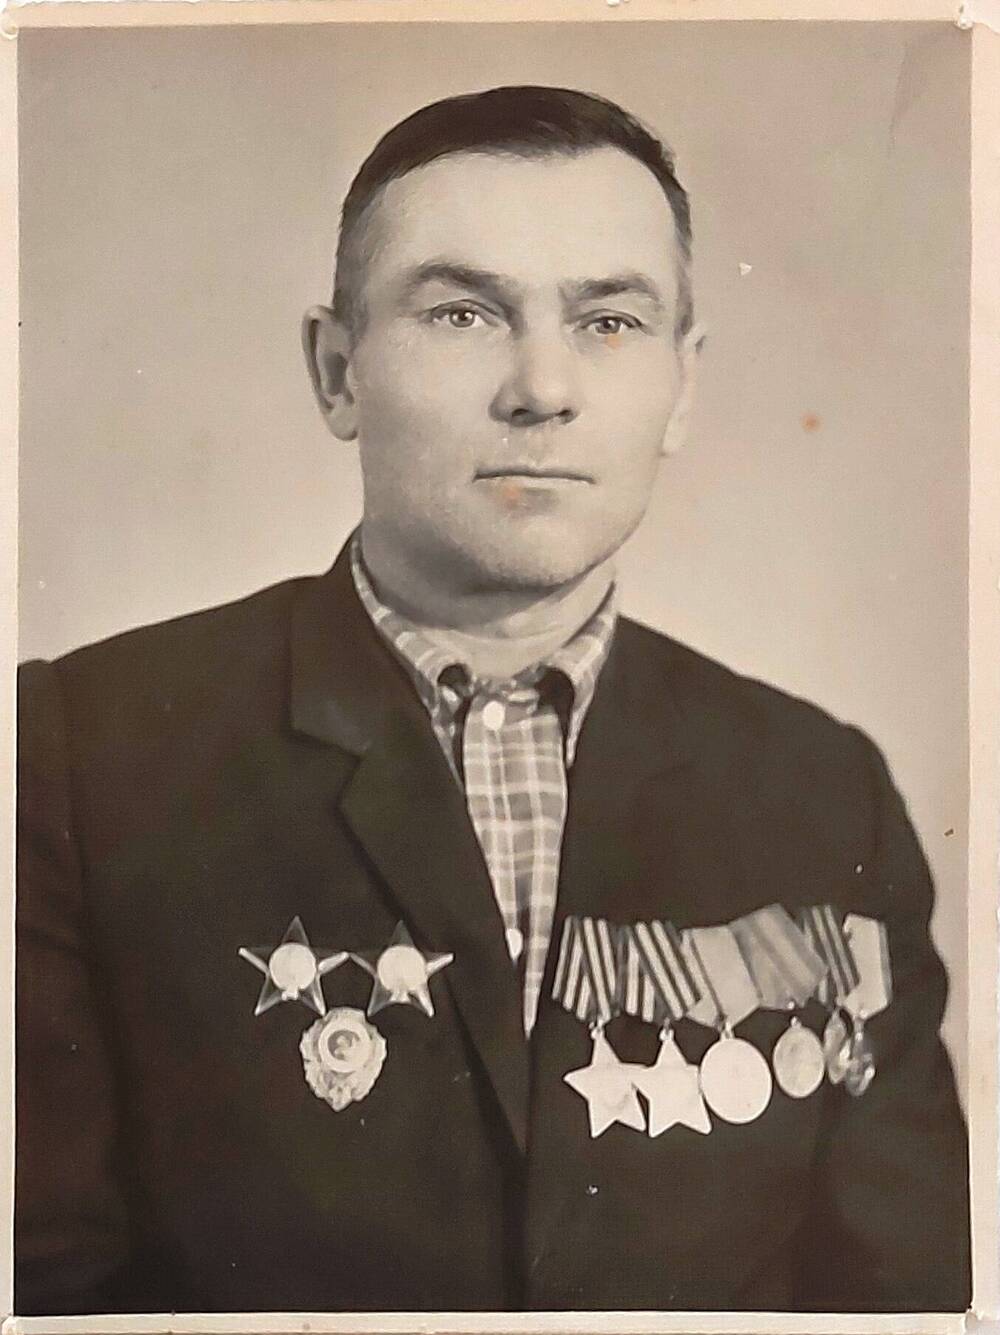 Фотография черно-белая погрудная Матюхина Сергея Филипповича - участника ВОВ 1941-1945 гг.